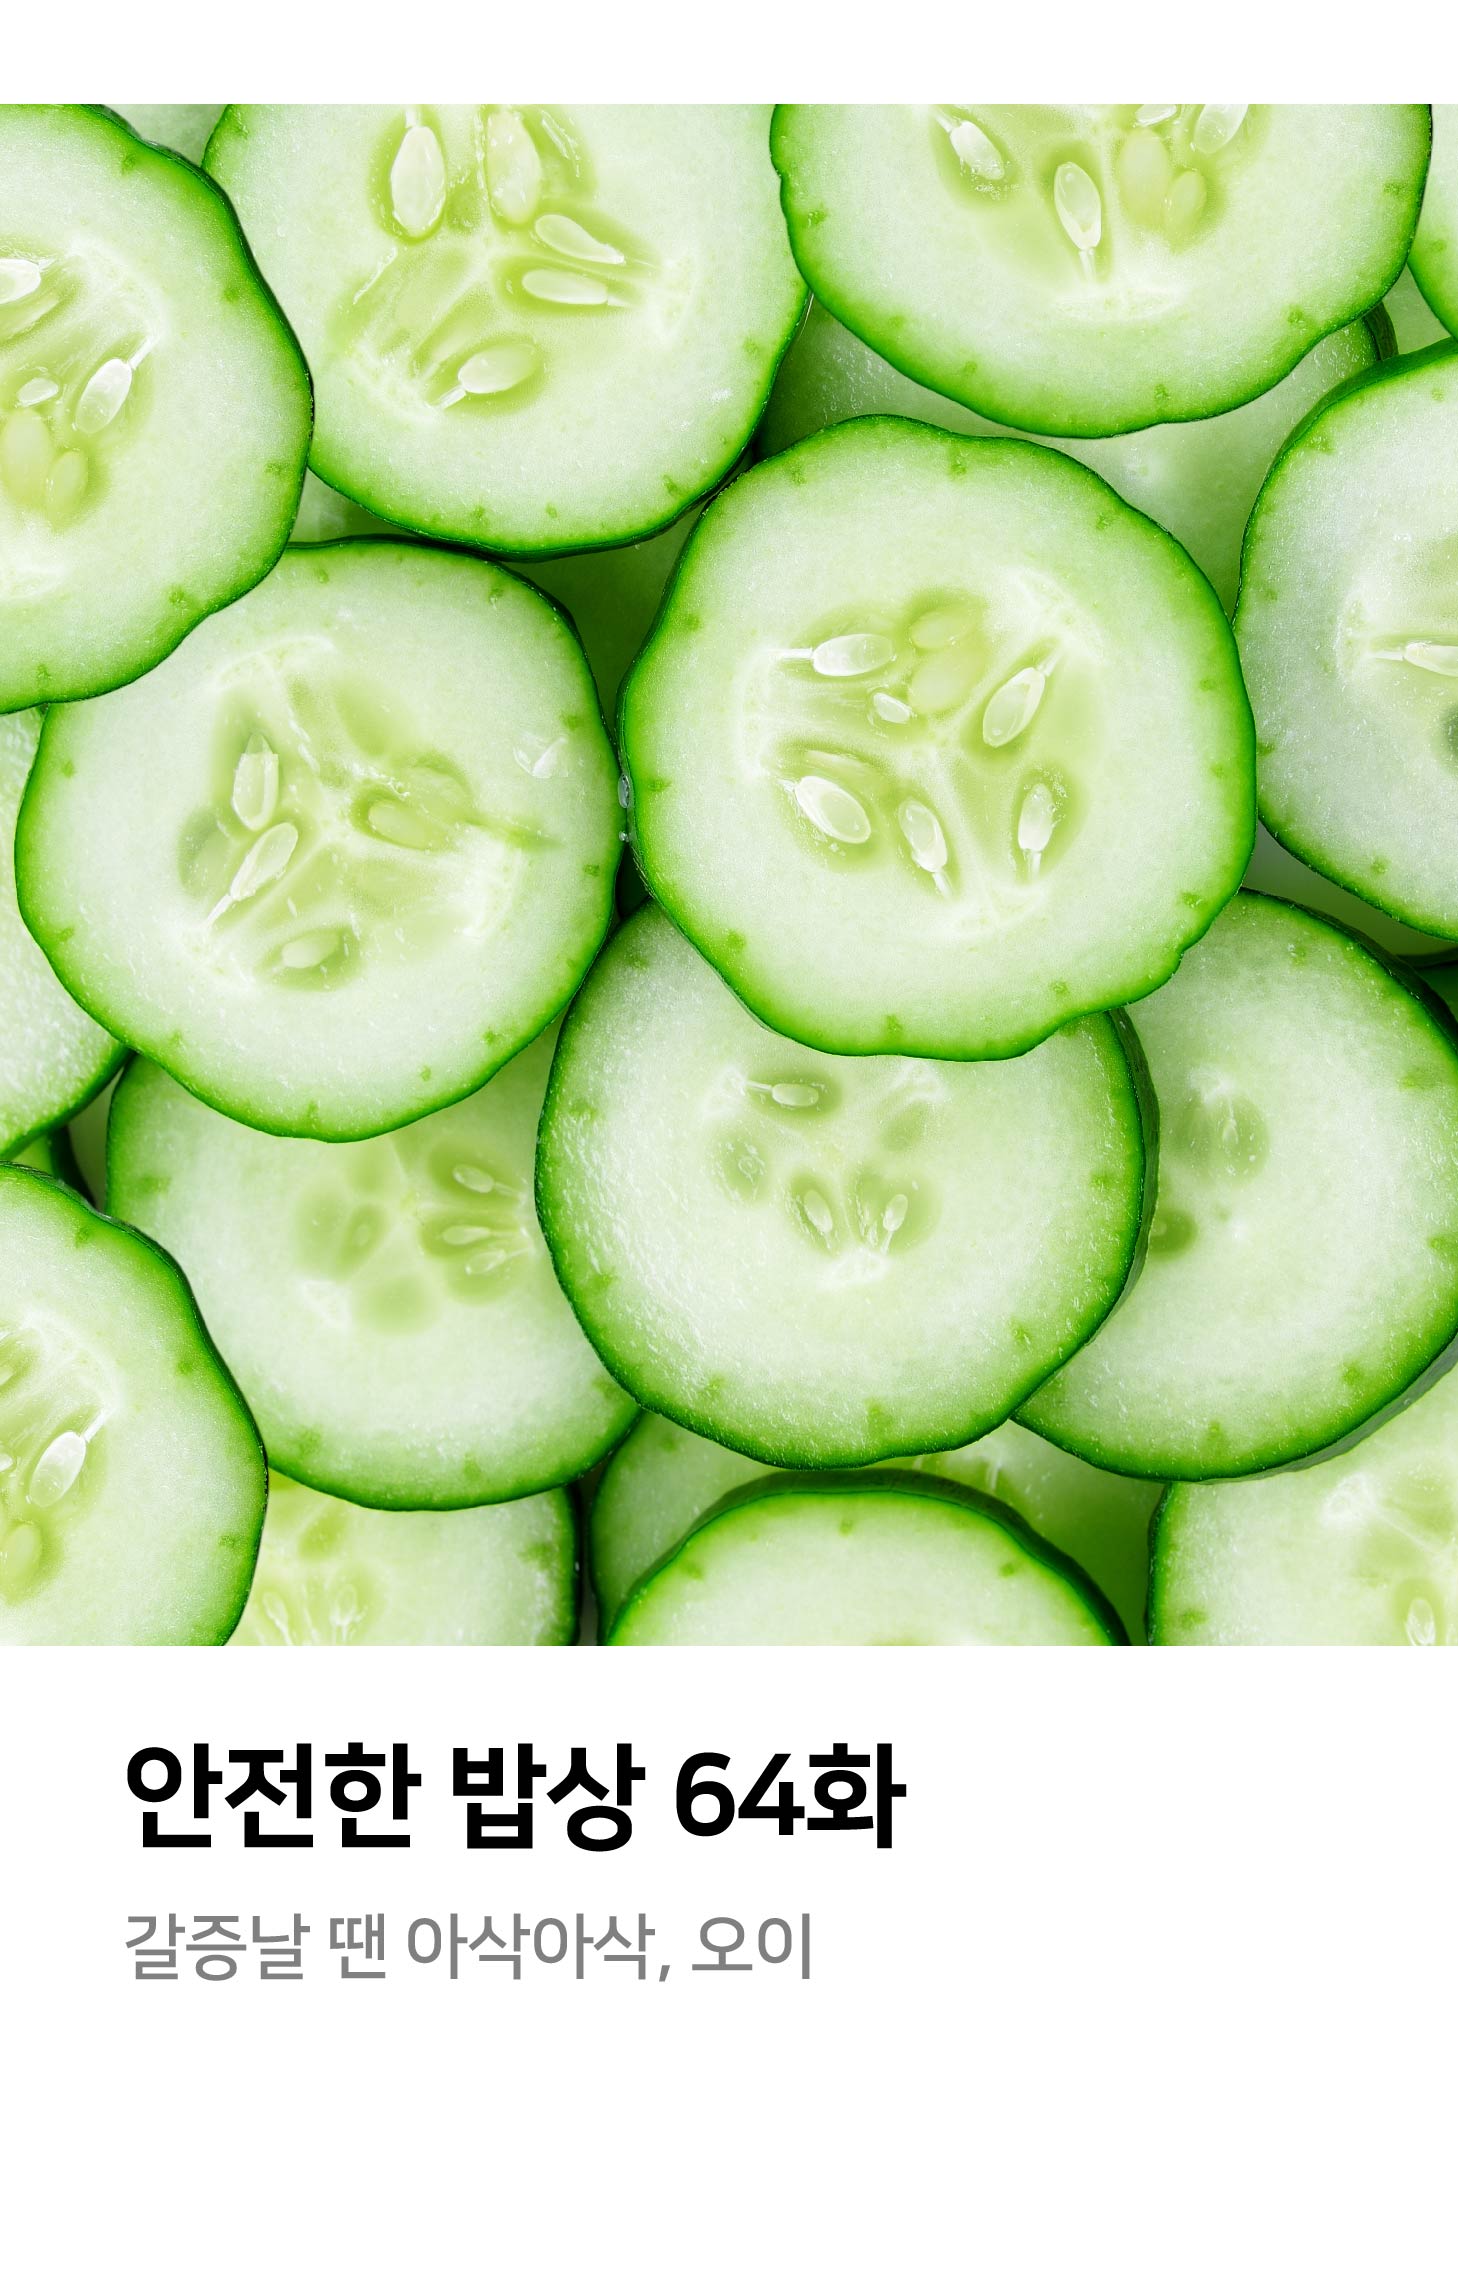 안전한밥상 64화 갈증날 땐 아삭아삭, 오이